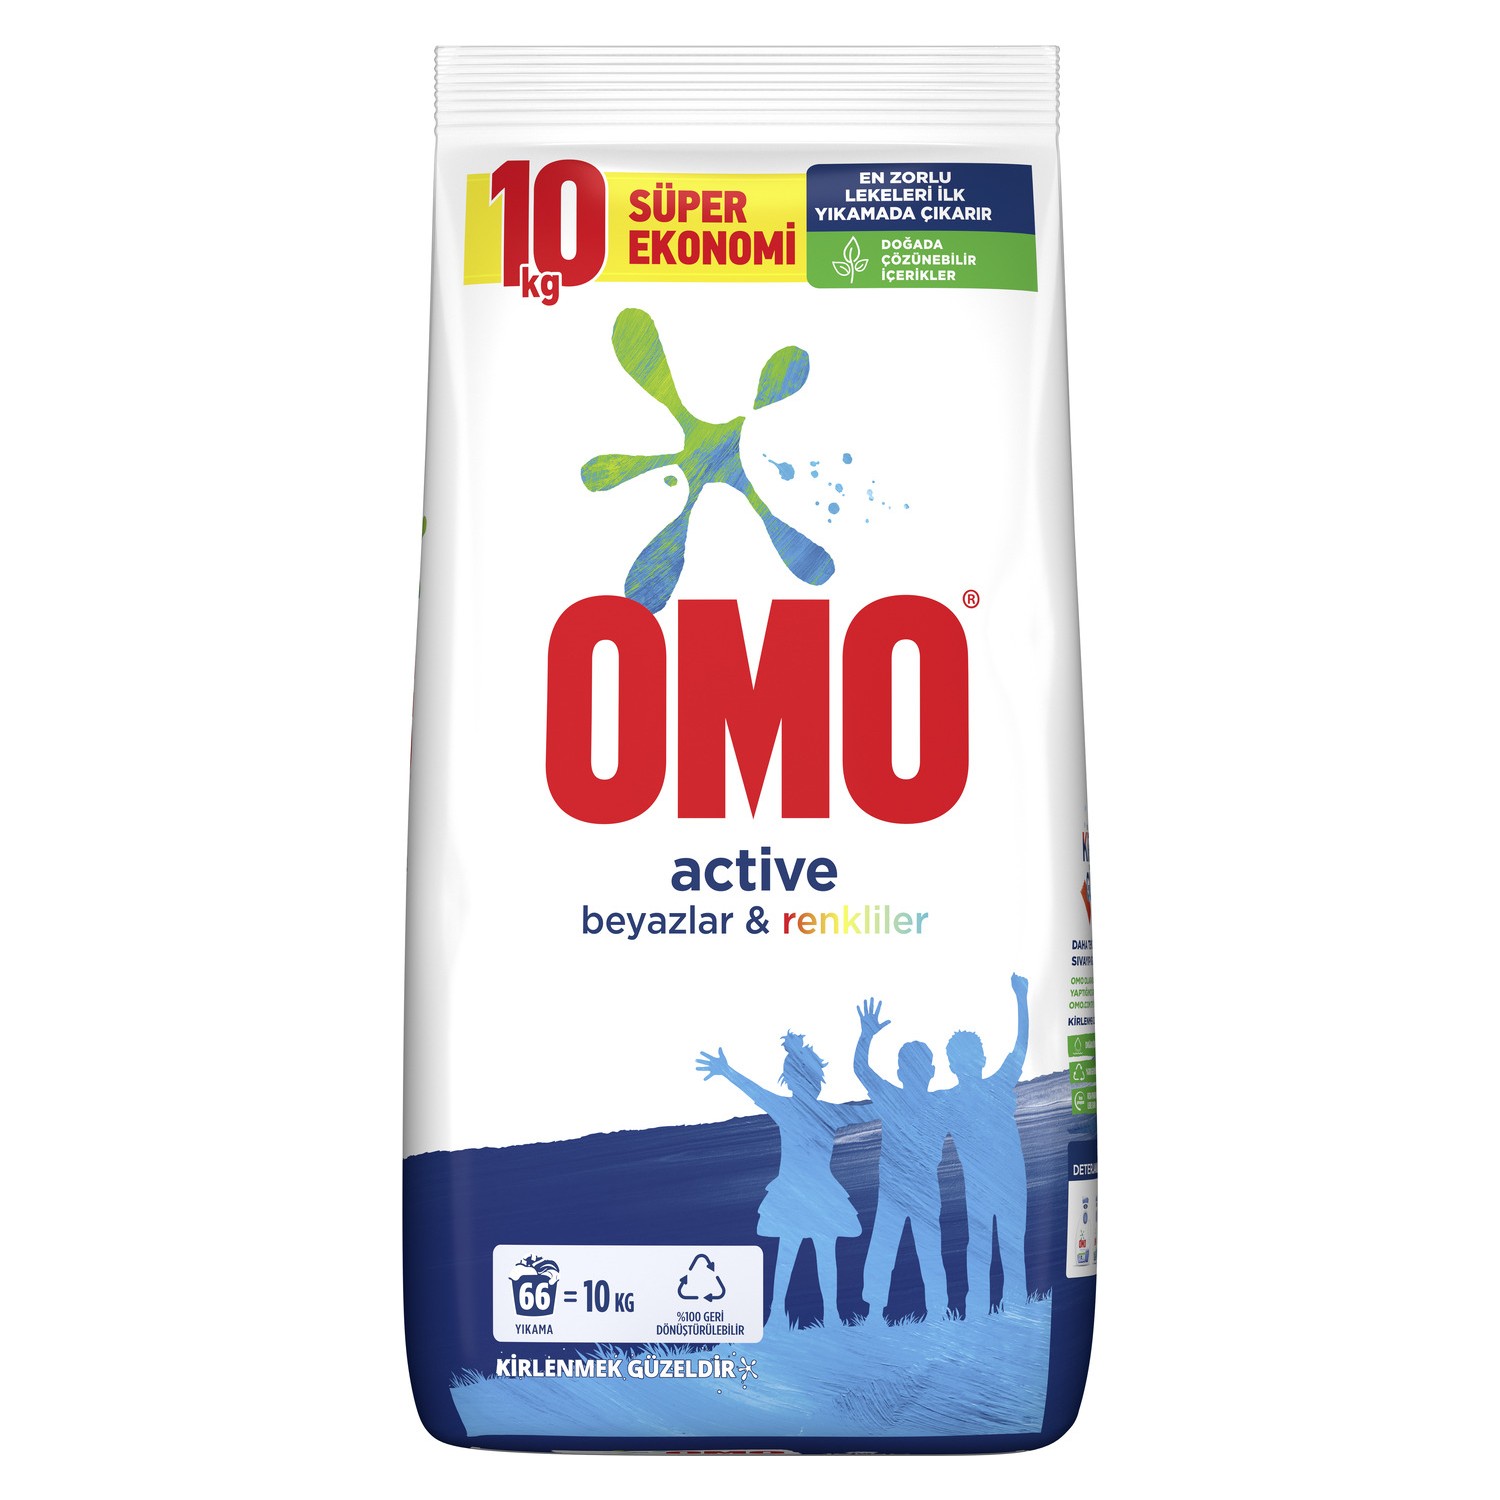 Omo Active Toz Çamaşır Deterjanı Beyazlar ve Renkliler İçin 66 Yıkama 10 KG